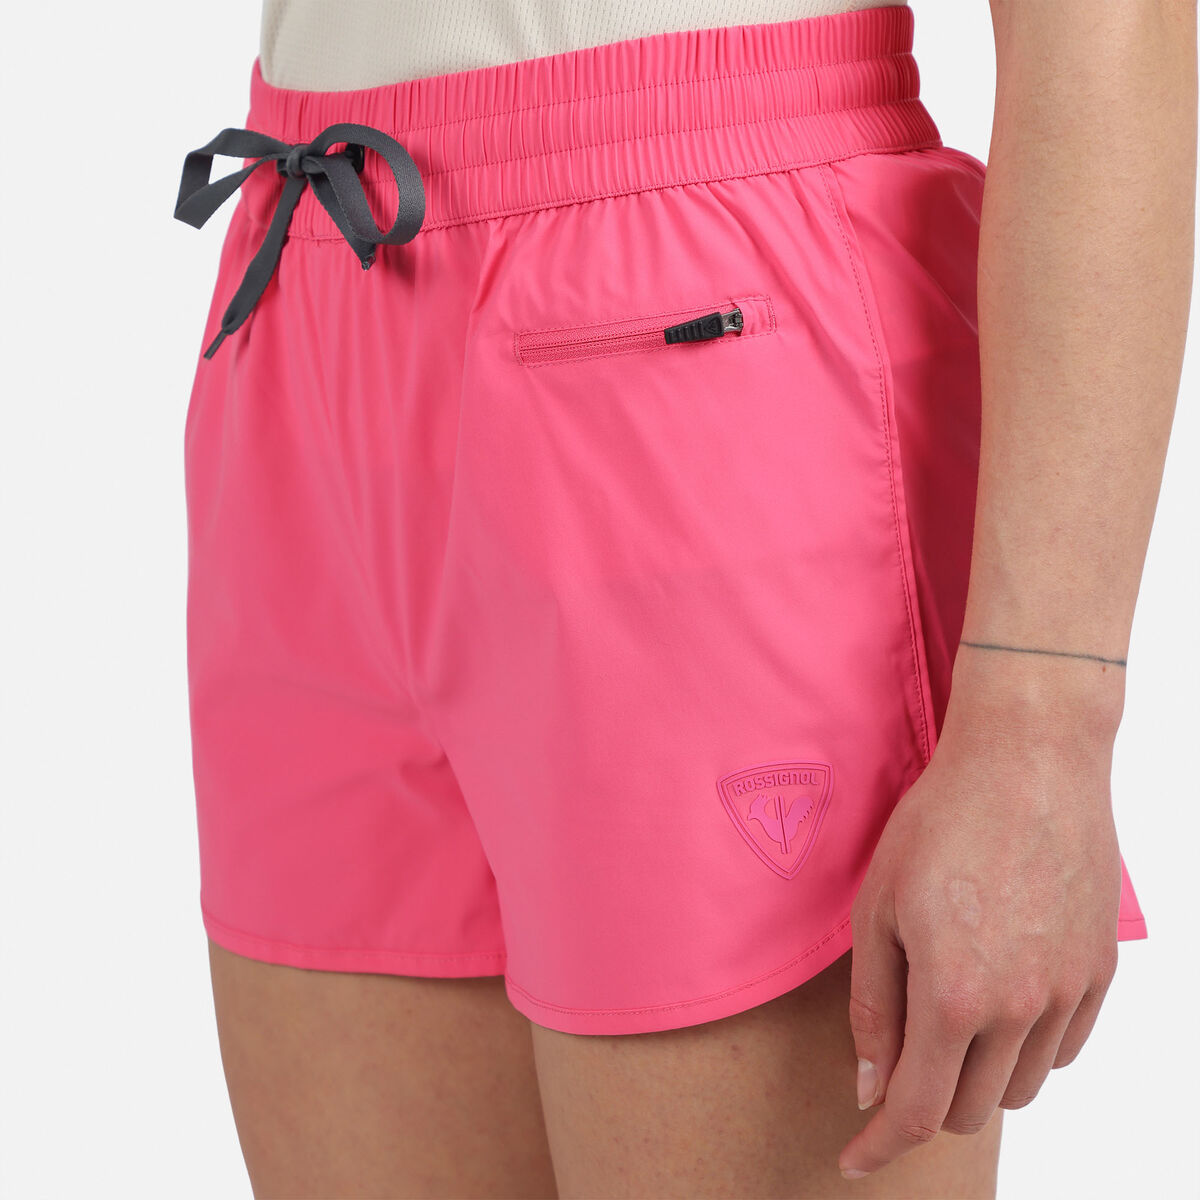 Rossignol Pantalones cortos básicos para mujer pinkpurple